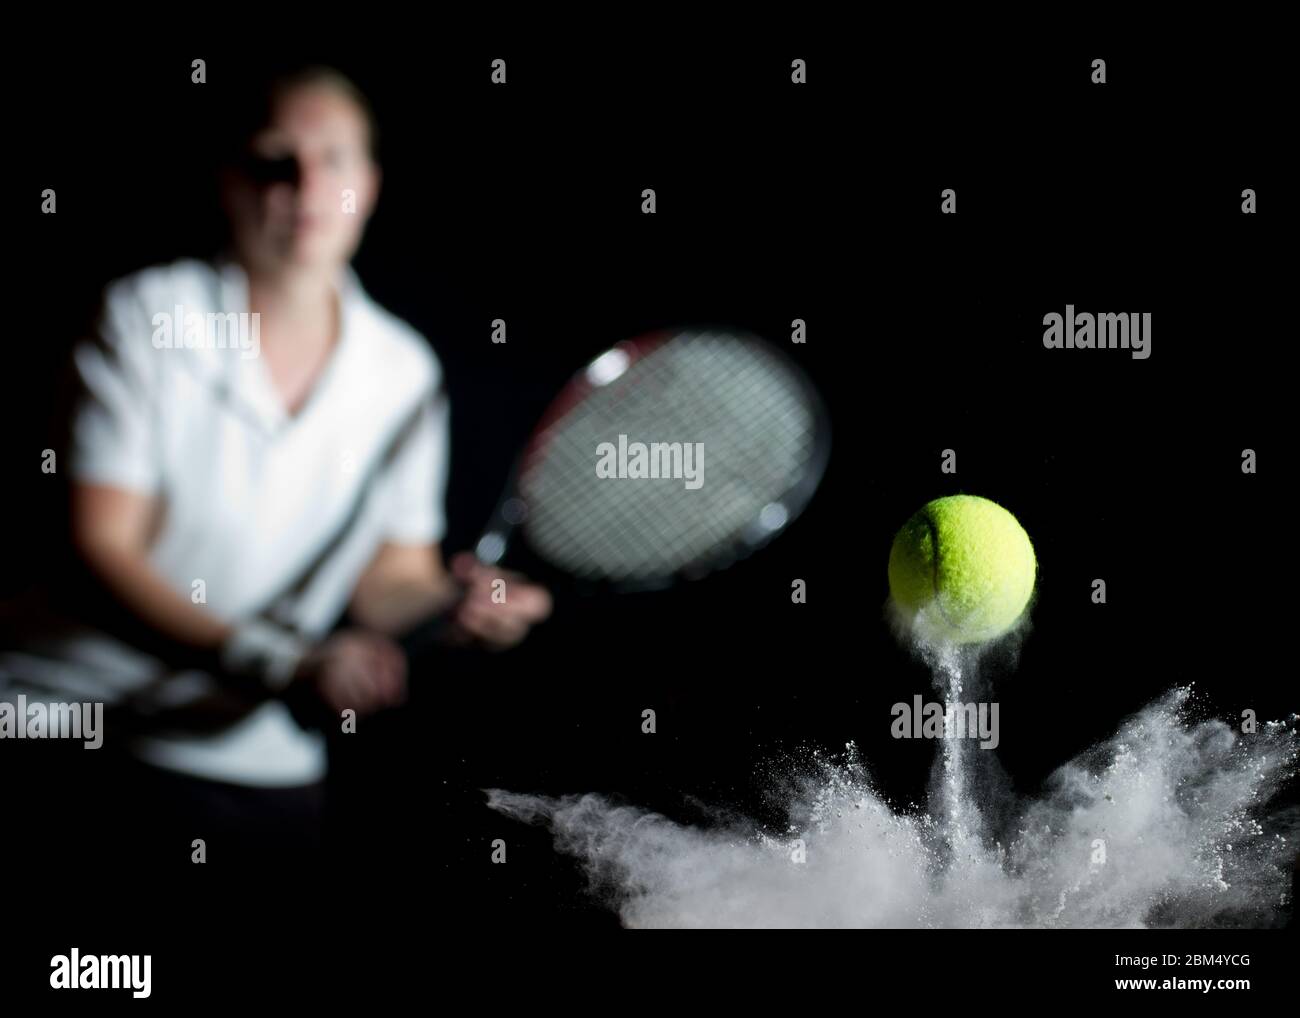 Une balle de tennis rebondissant sur la ligne avec de la poussière de craie et un joueur hors foyer dans le fond avec une raquette. Conceptuel, avec fond noir Banque D'Images